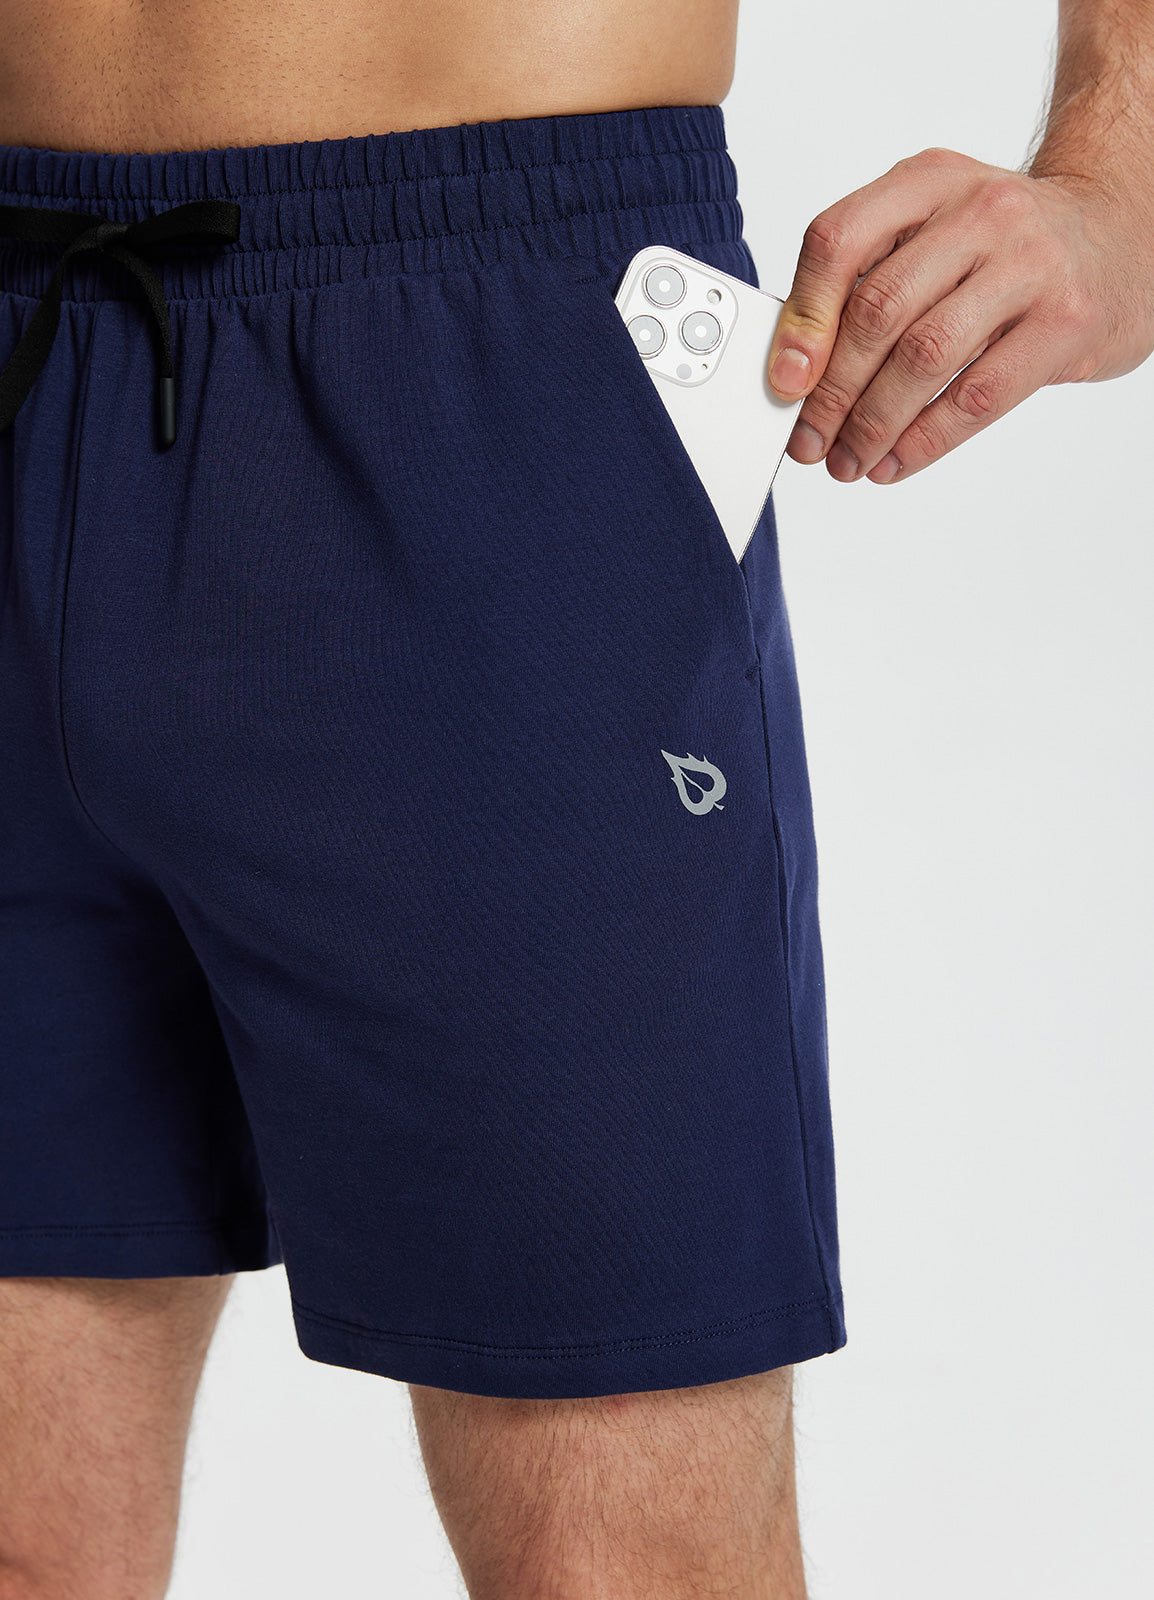 Baleaf Men's Evergreen Cotton Pocketed Shorts dbh048 Eclipse Details